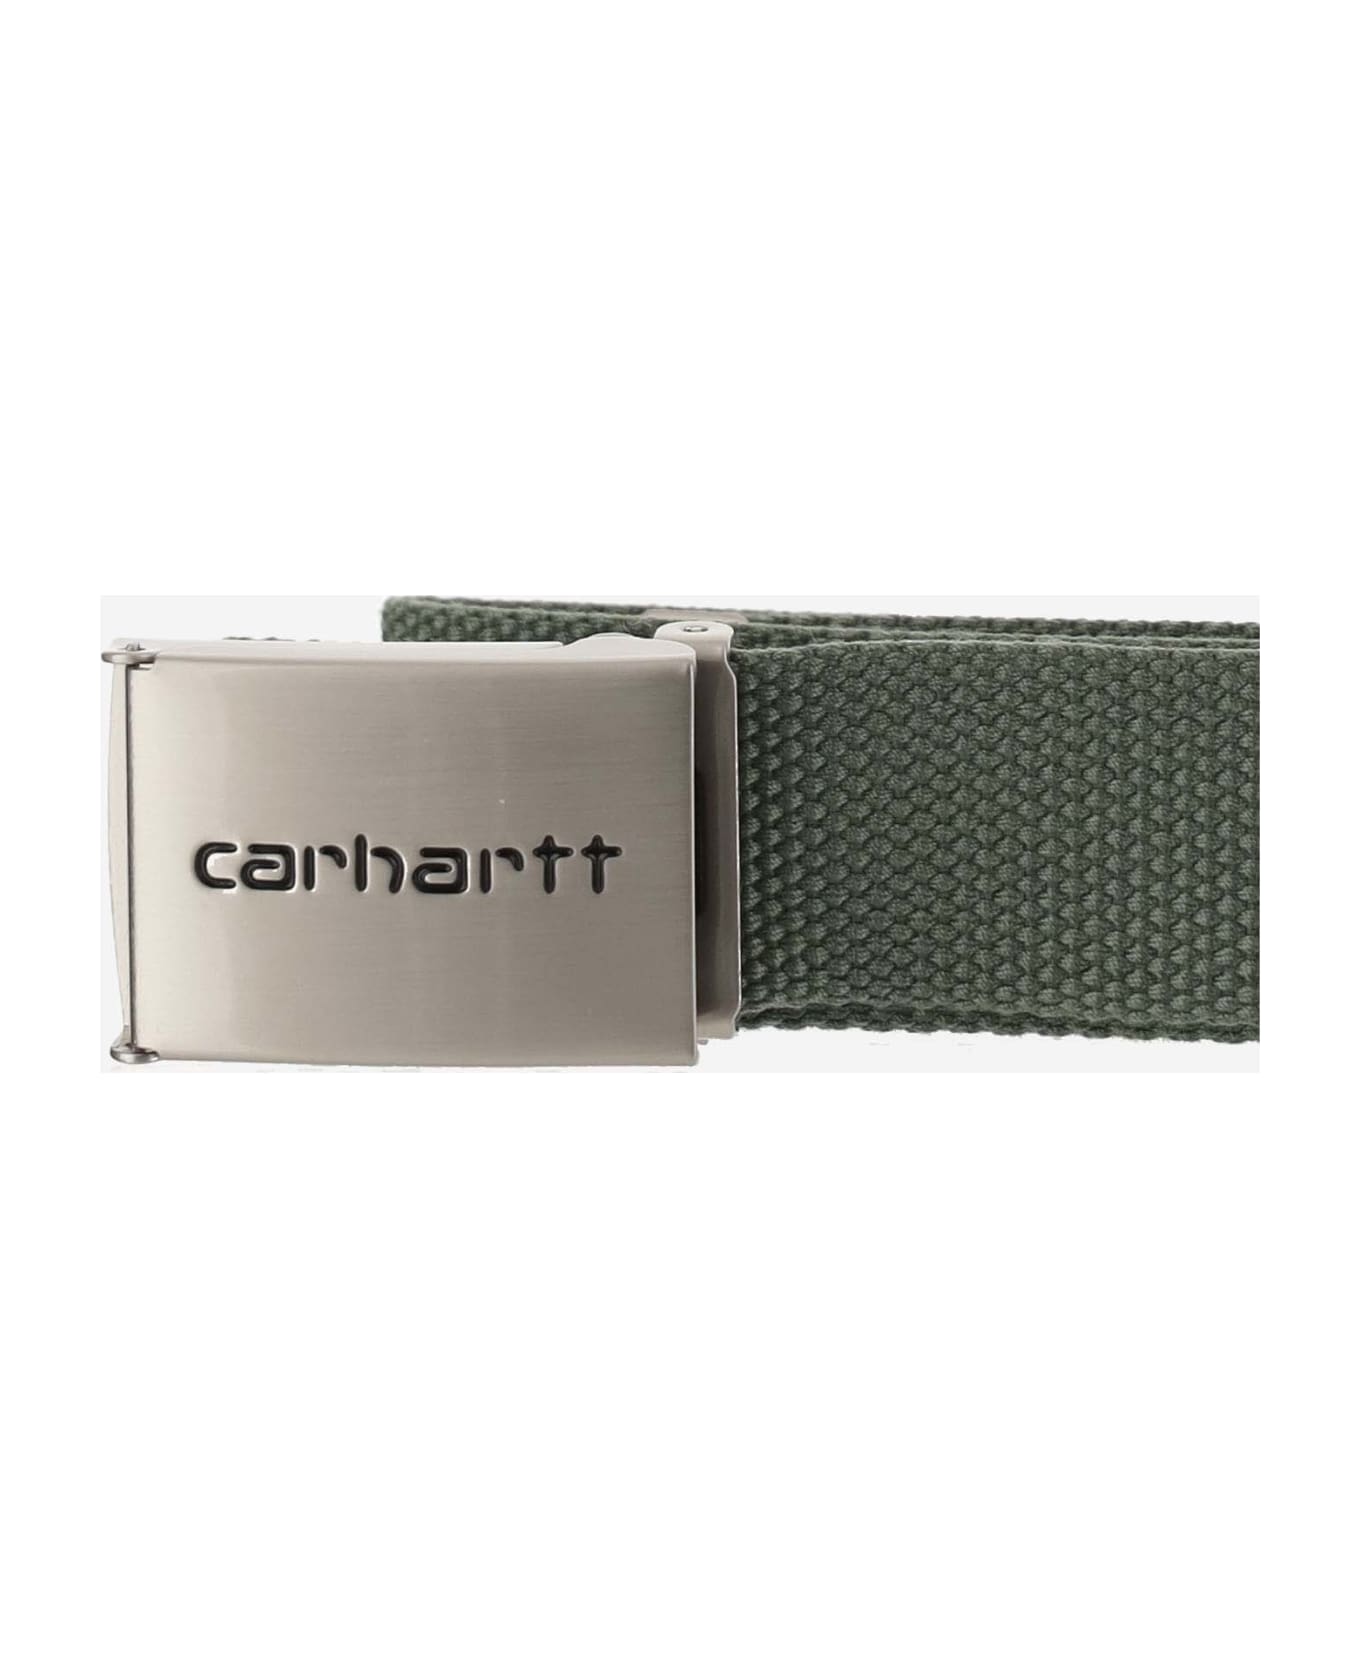 Carhartt Technical Fabric Belt With Logo - Green